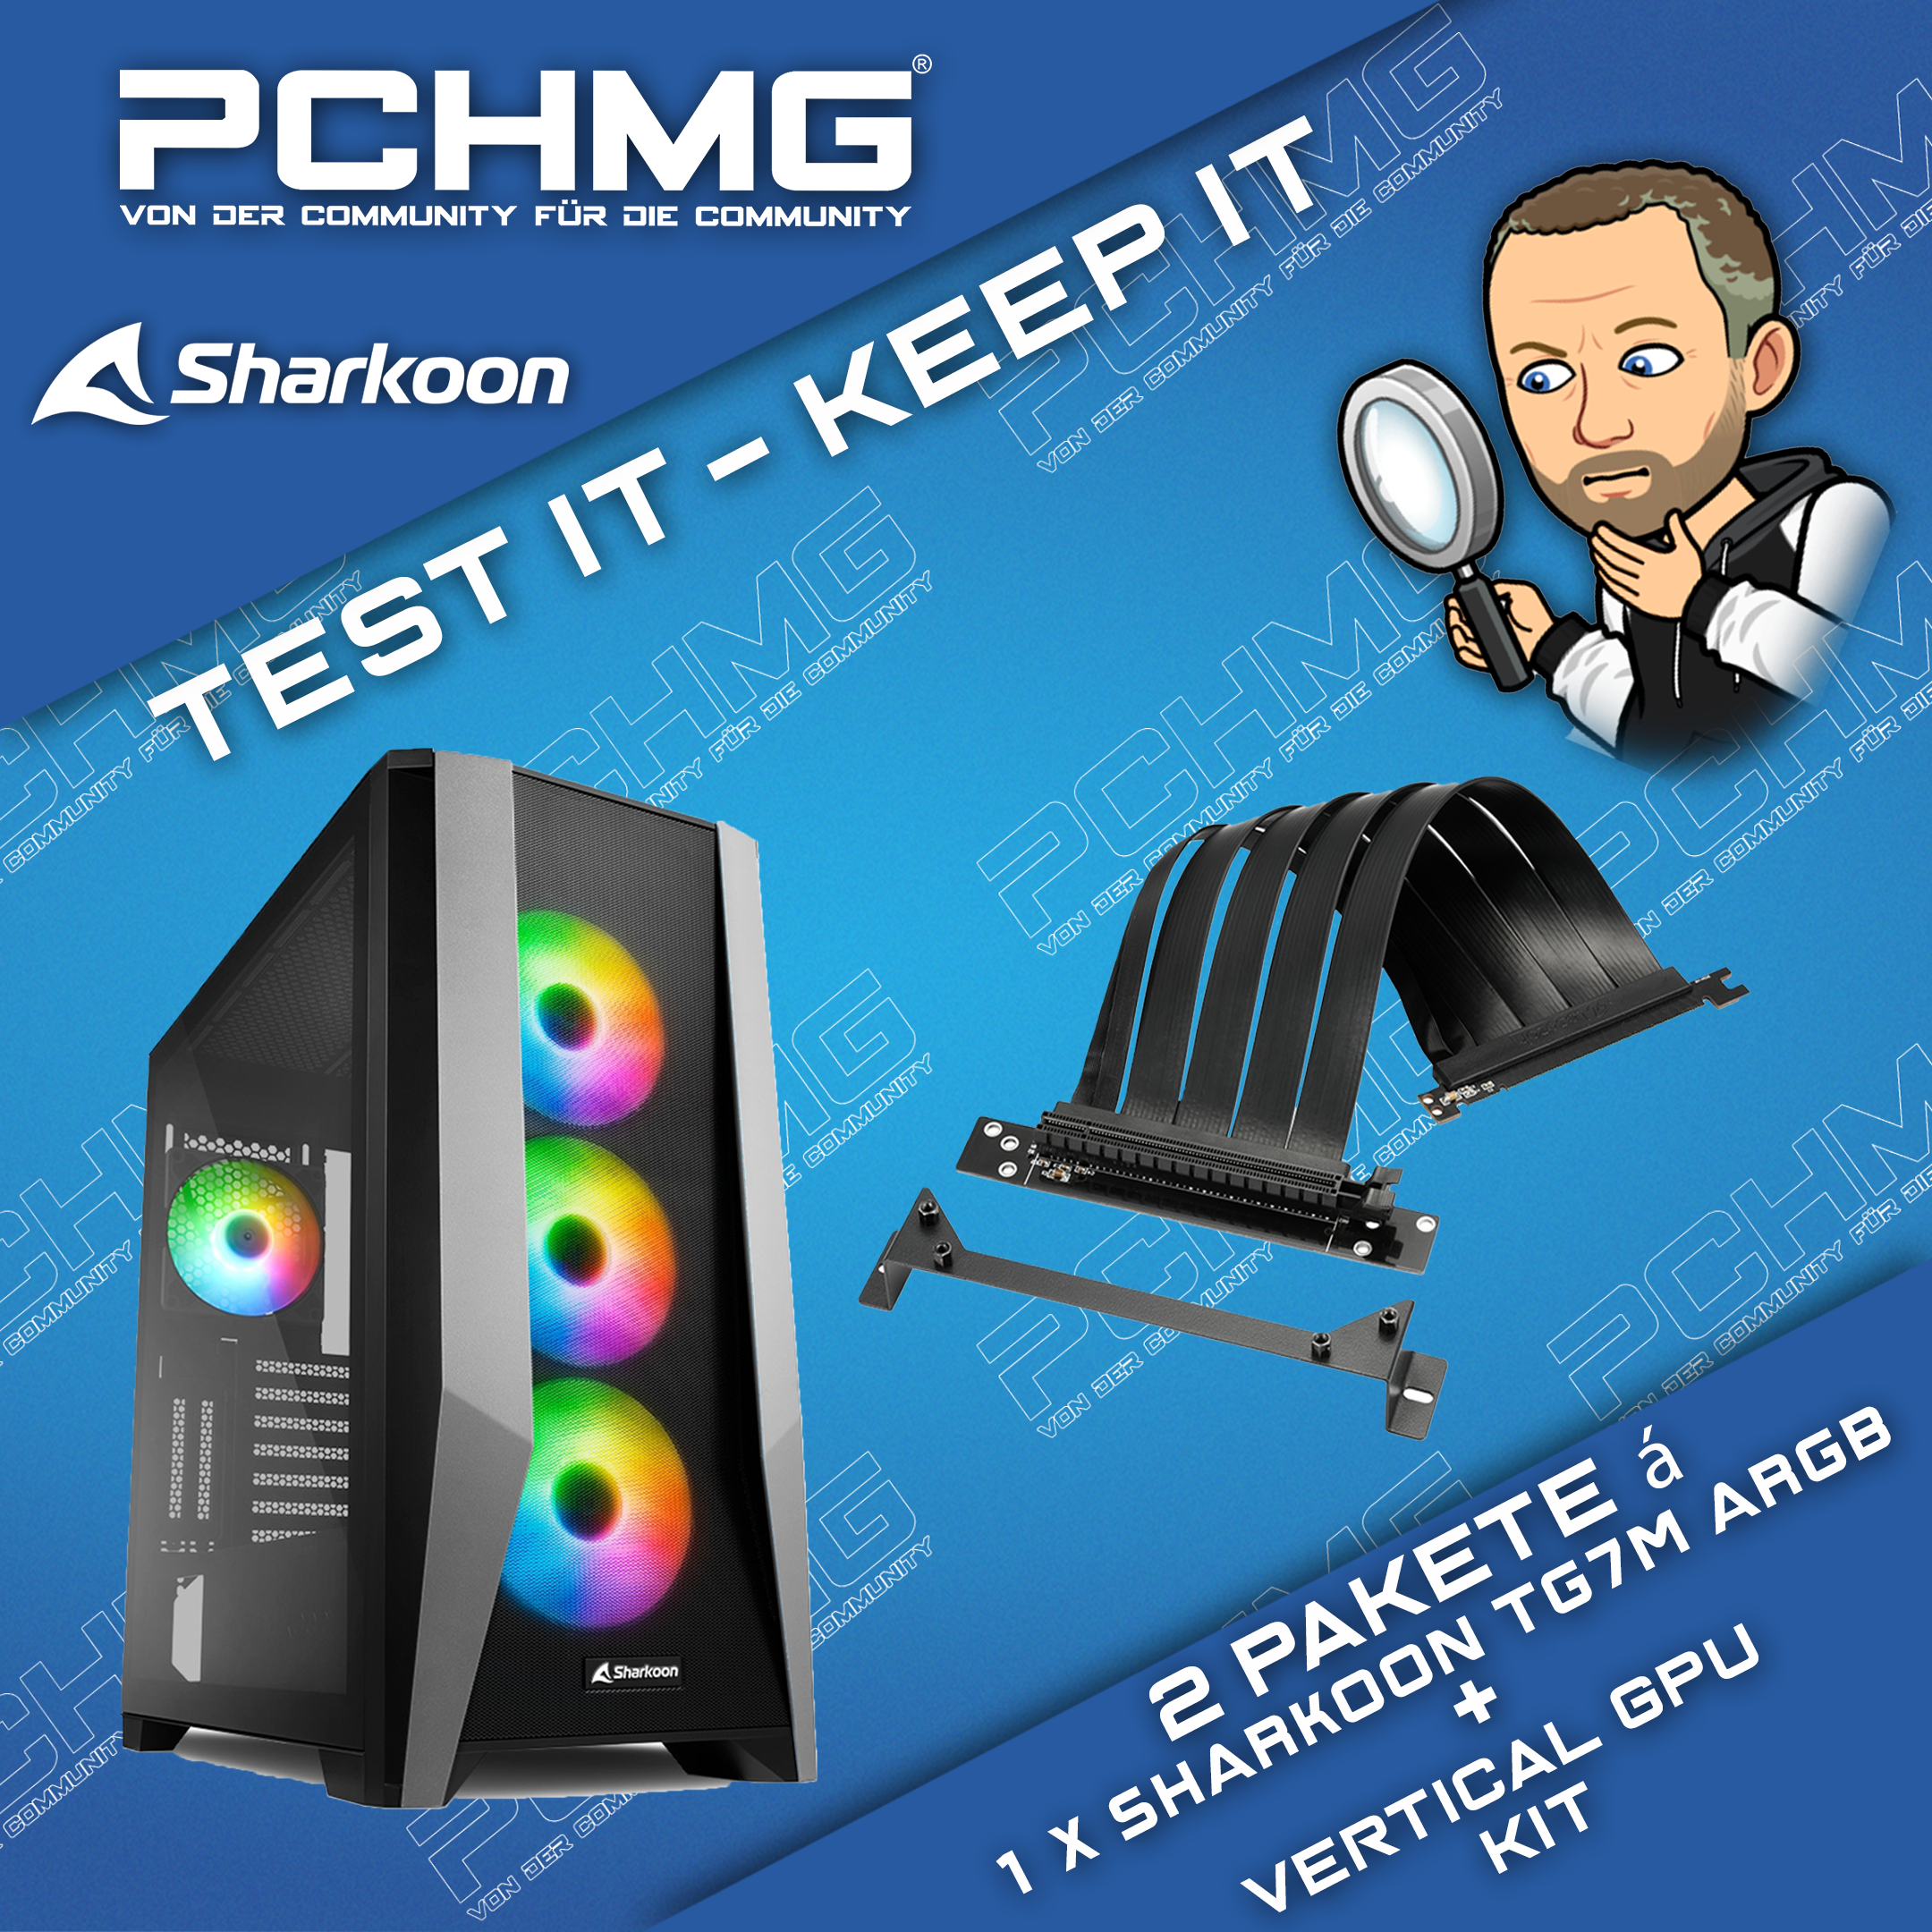 PCHMG "Test it - Keep it" - Sharkoon TG7M RGB - PCHMG "Test it - Keep it" - Sharkoon TG7M RGB